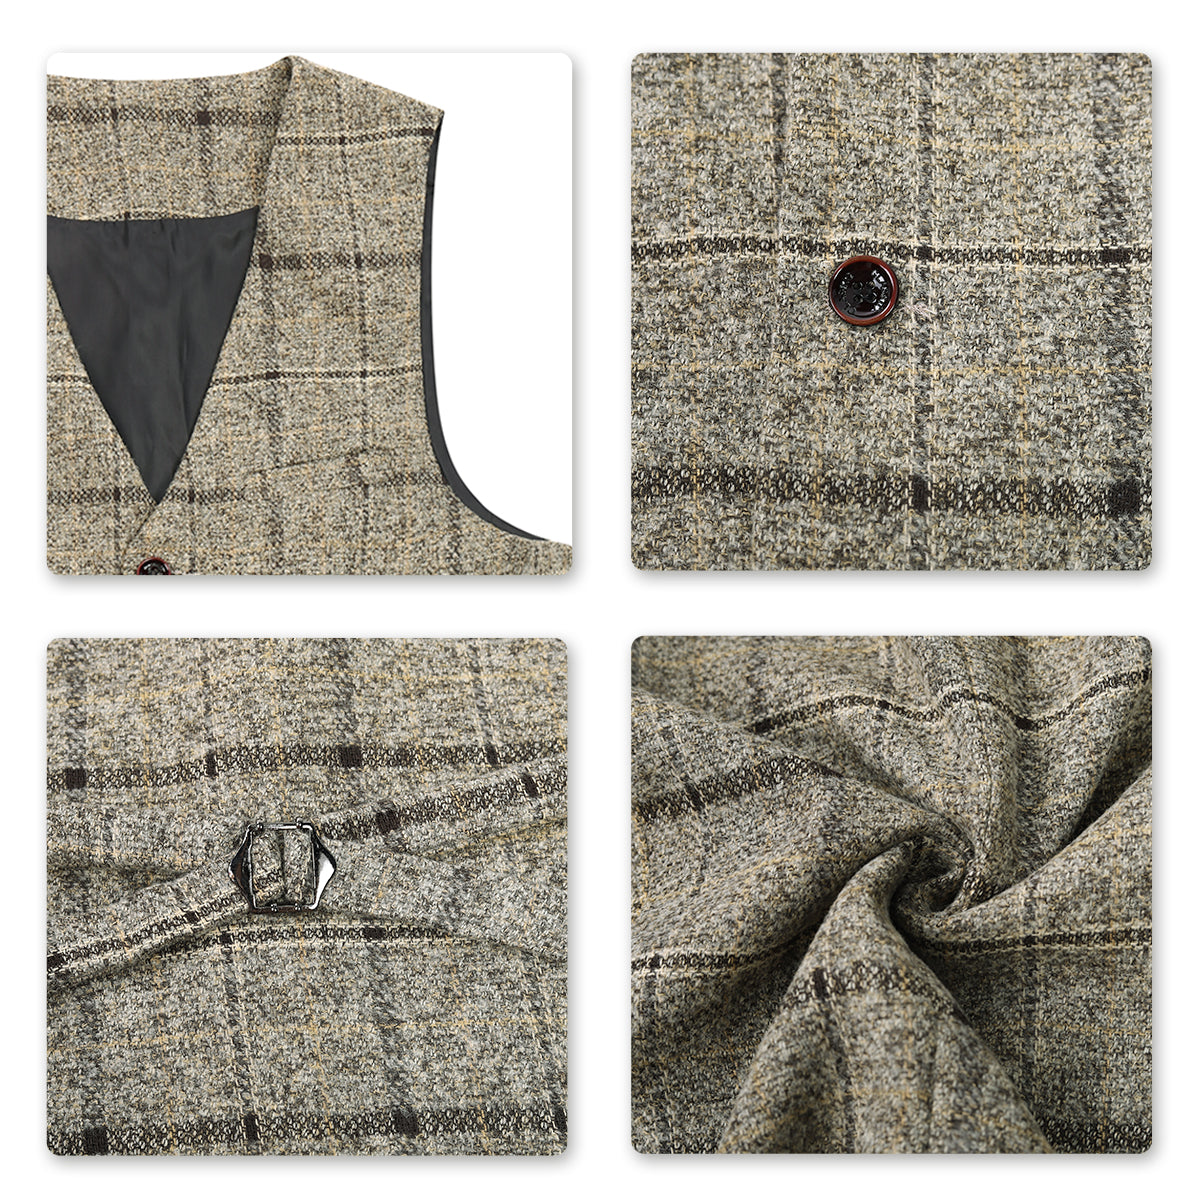 Men's Plaid One Button Wool Suit 3-Piece Suit Beige